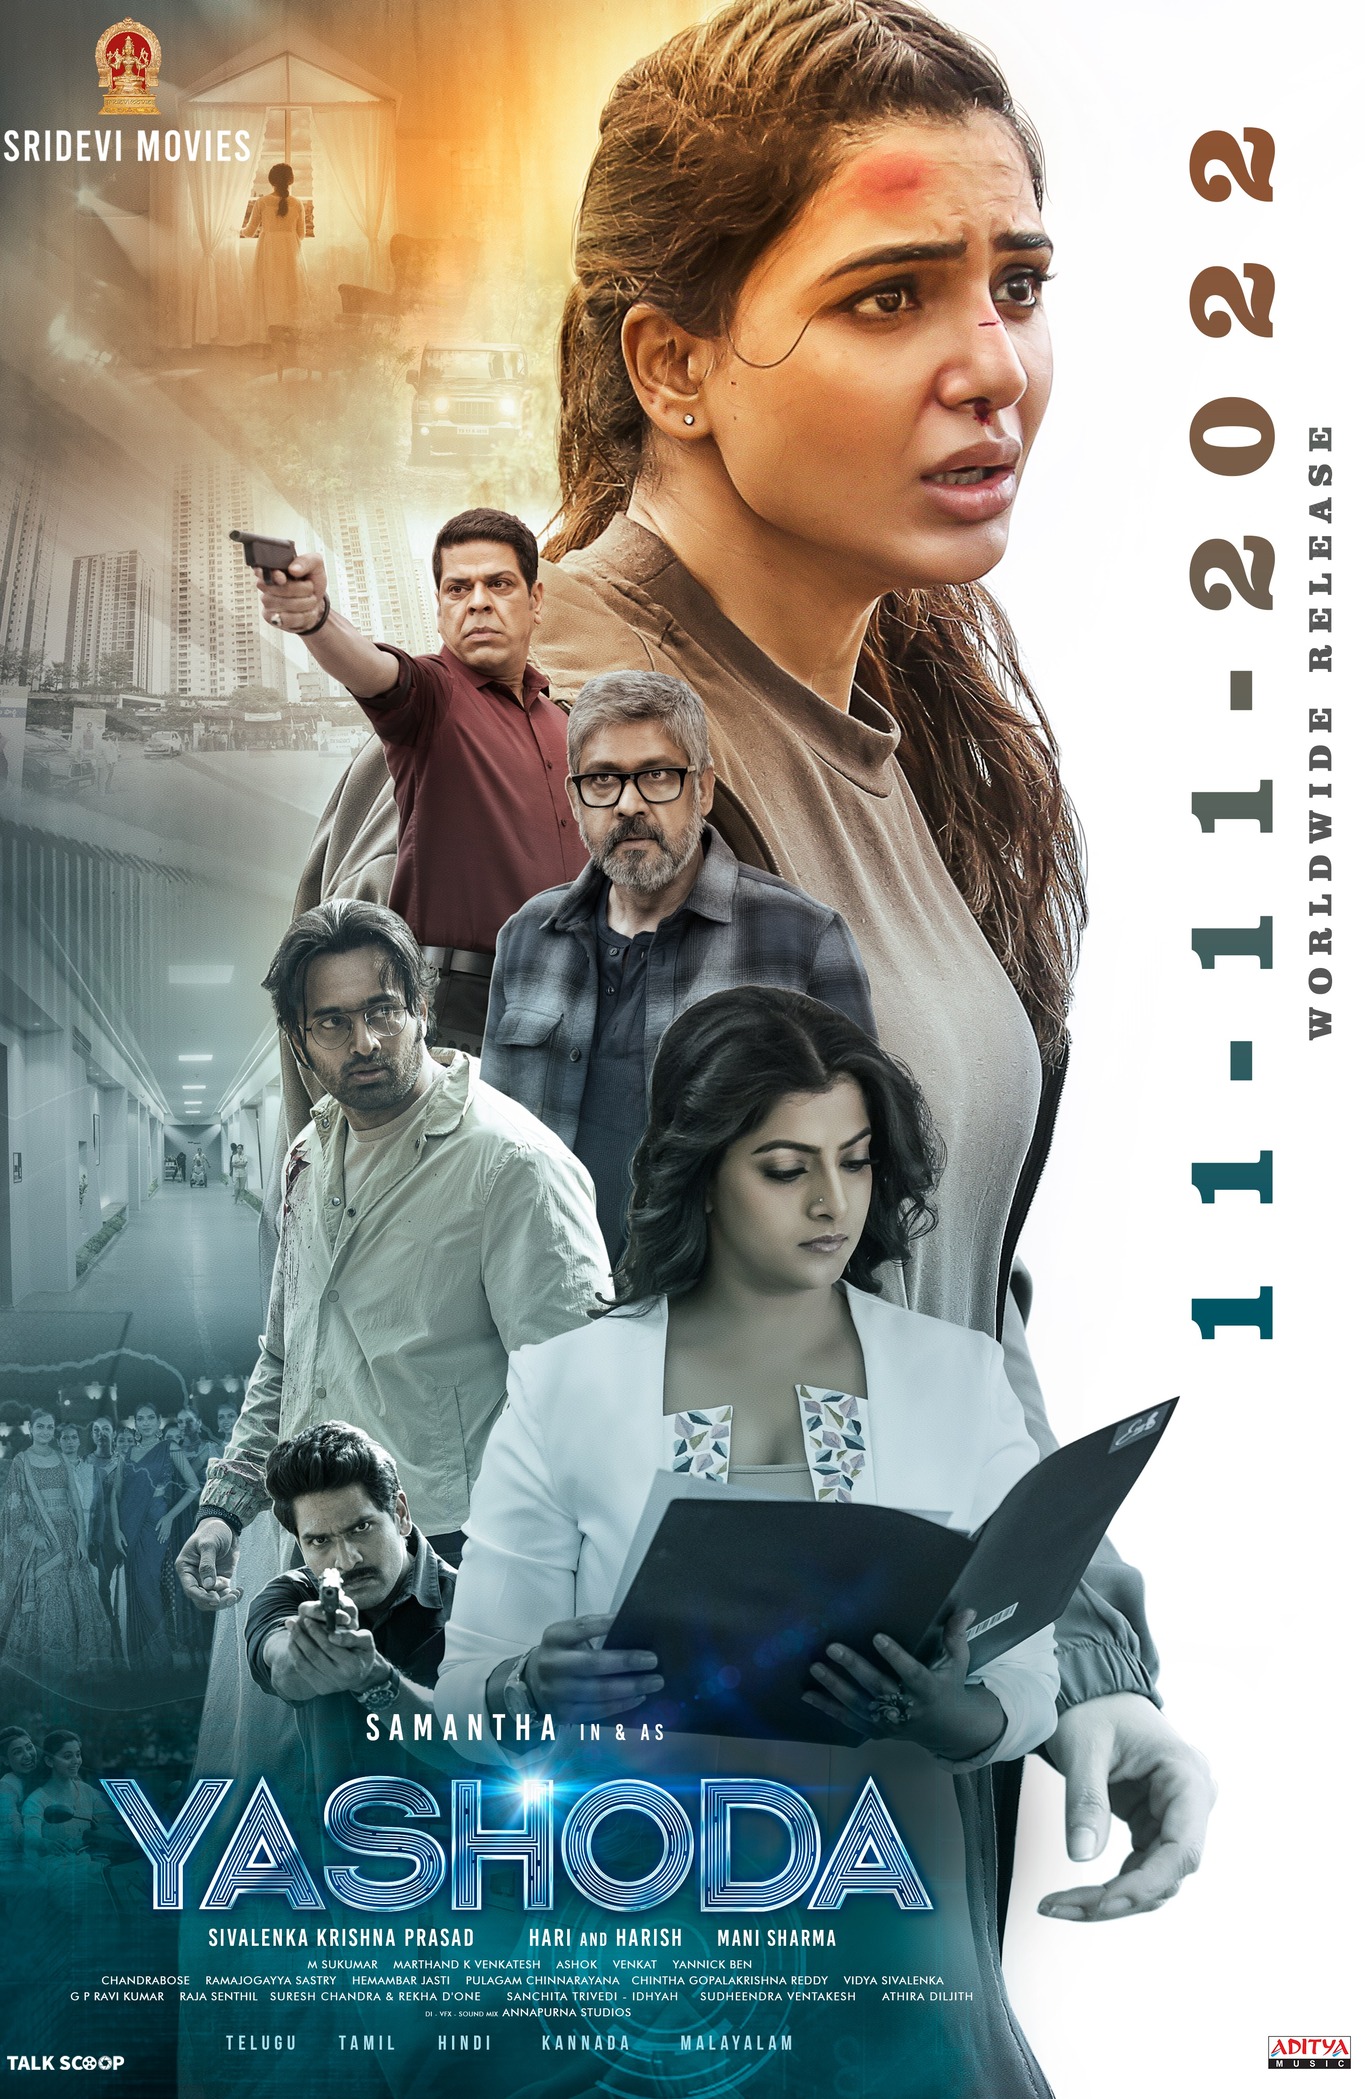 Yashoda 2022 Tamil Dubbed Thriller Movie Online